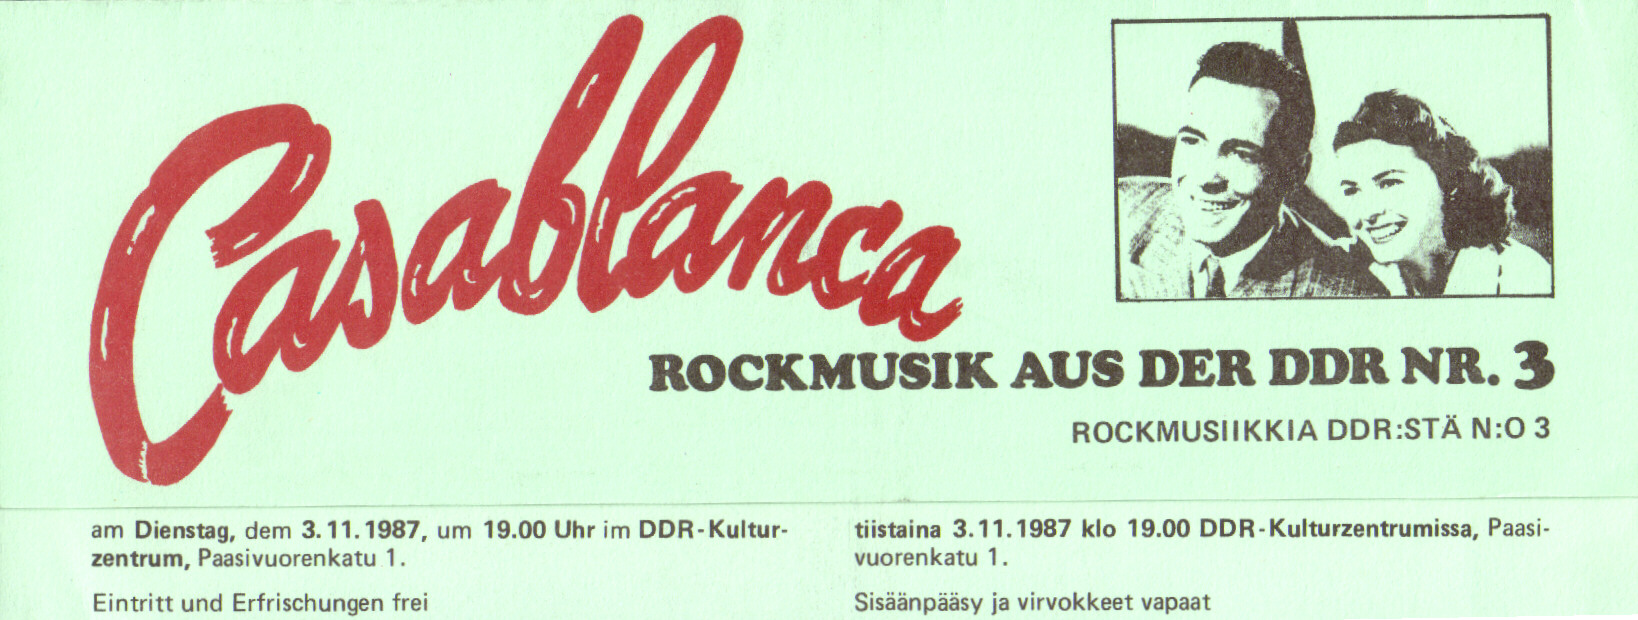 Einladung zur 3. KuZ-Veranstaltung Rockmusik aus der DDR